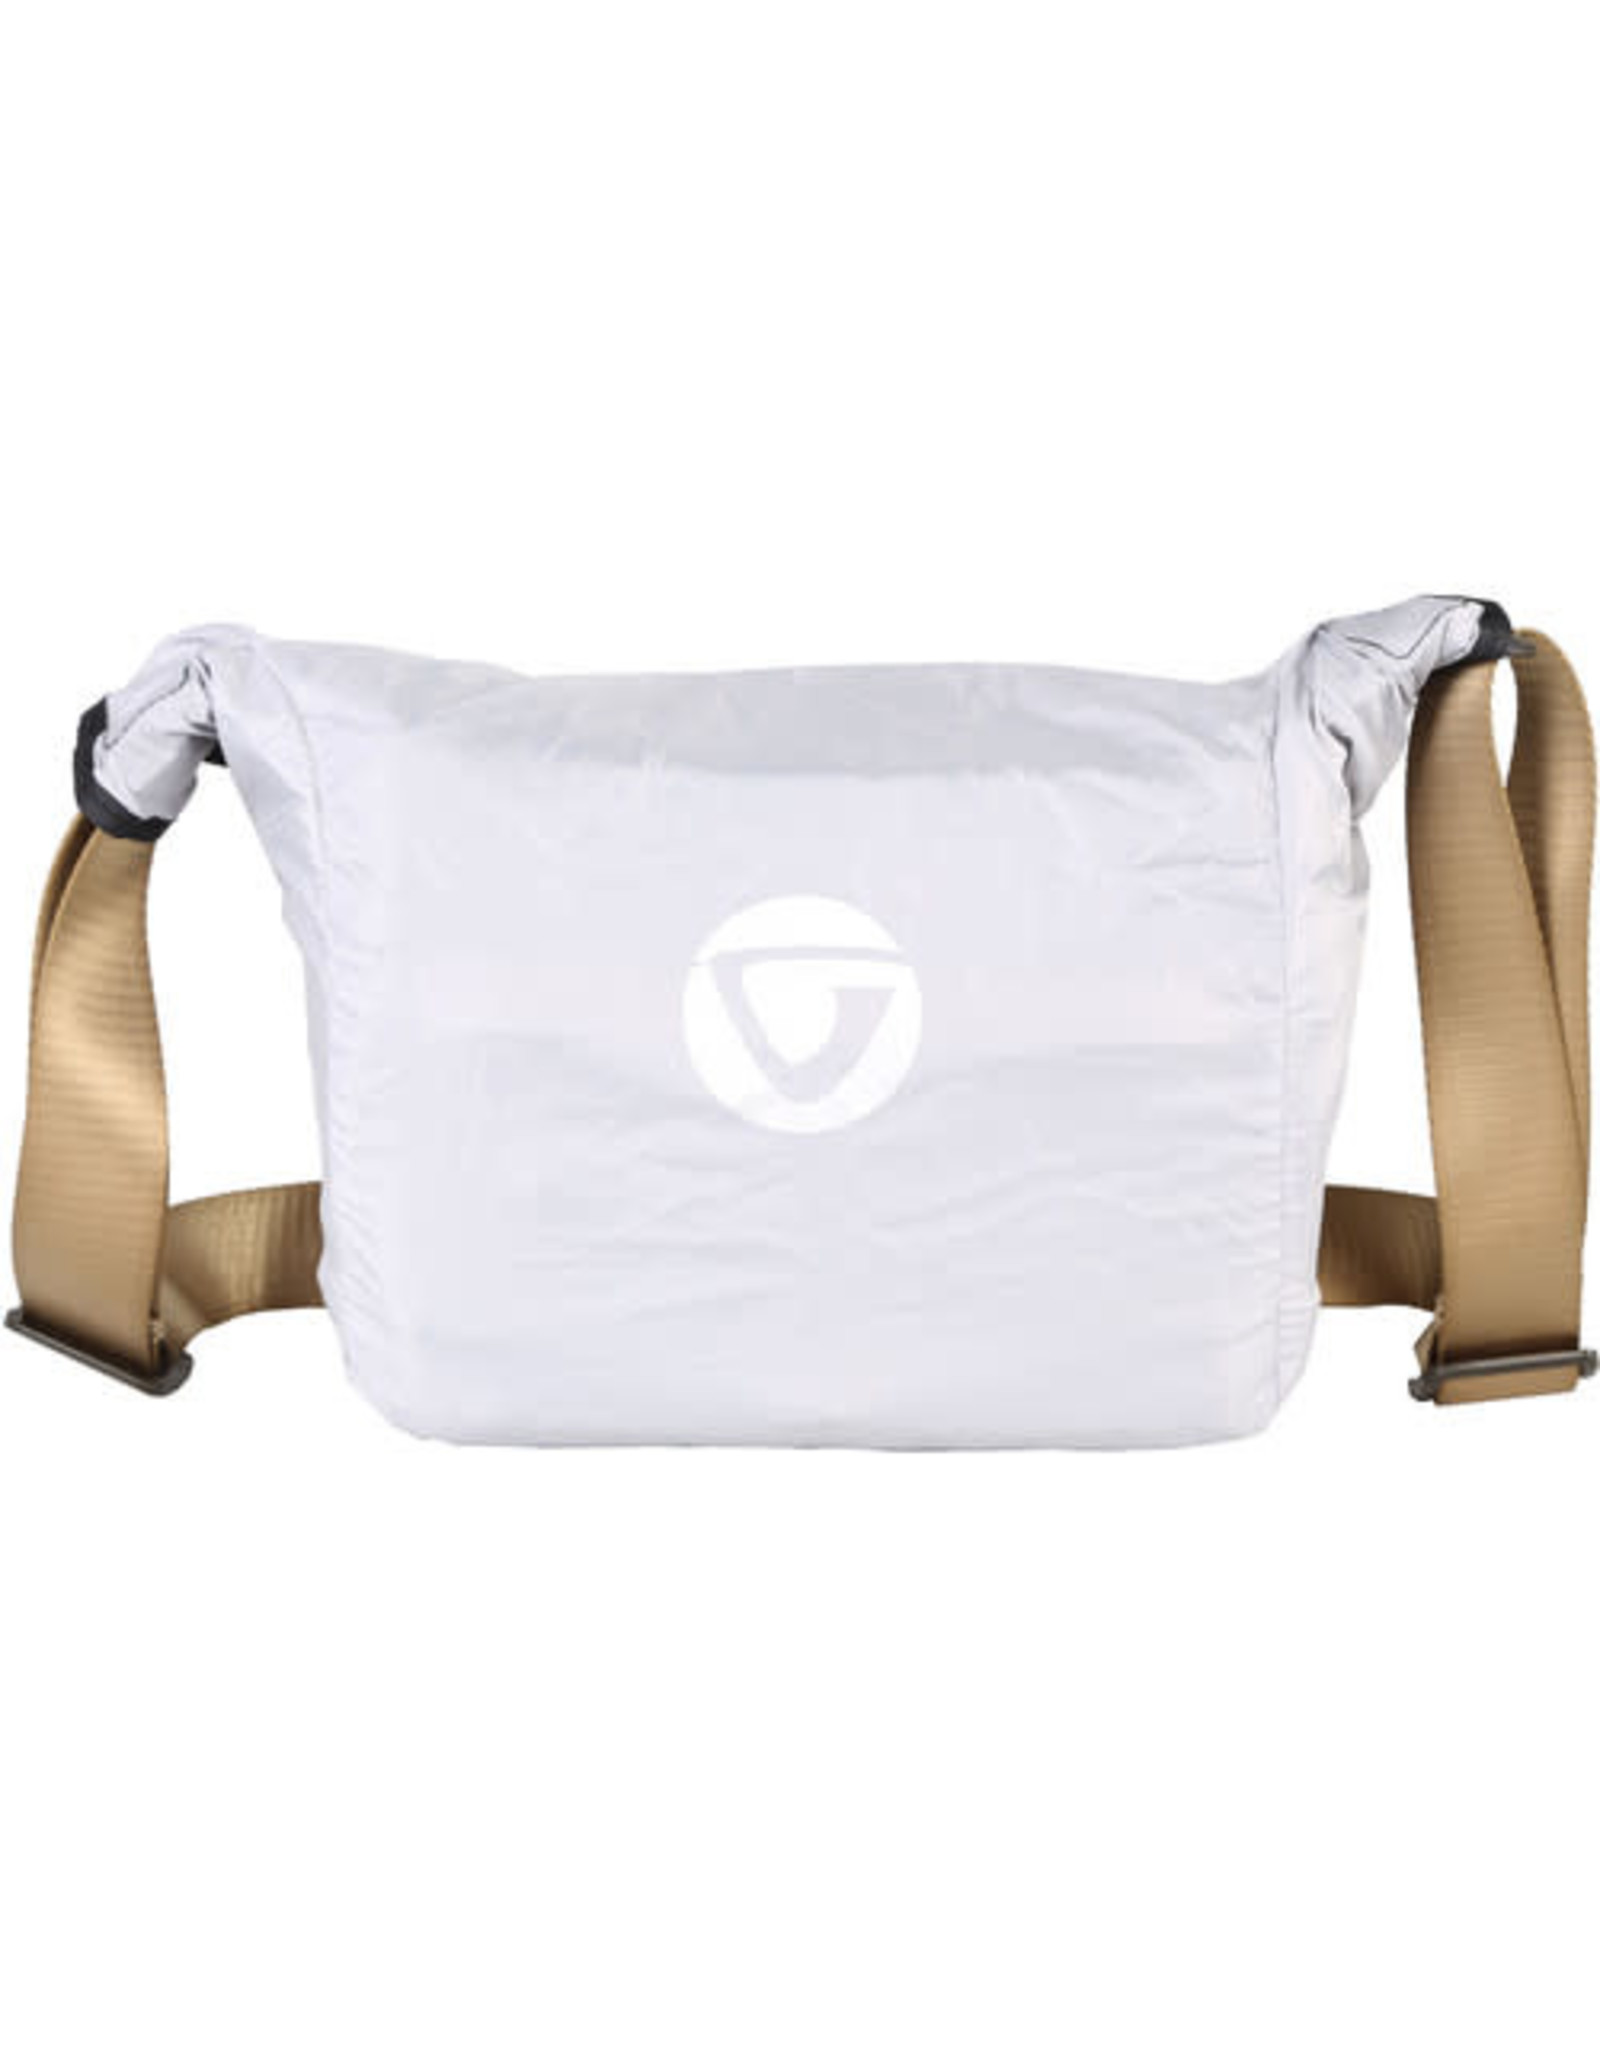 Vanguard Vanguard VEO GO 21M Camera Shoulder Bag (Choose Color)